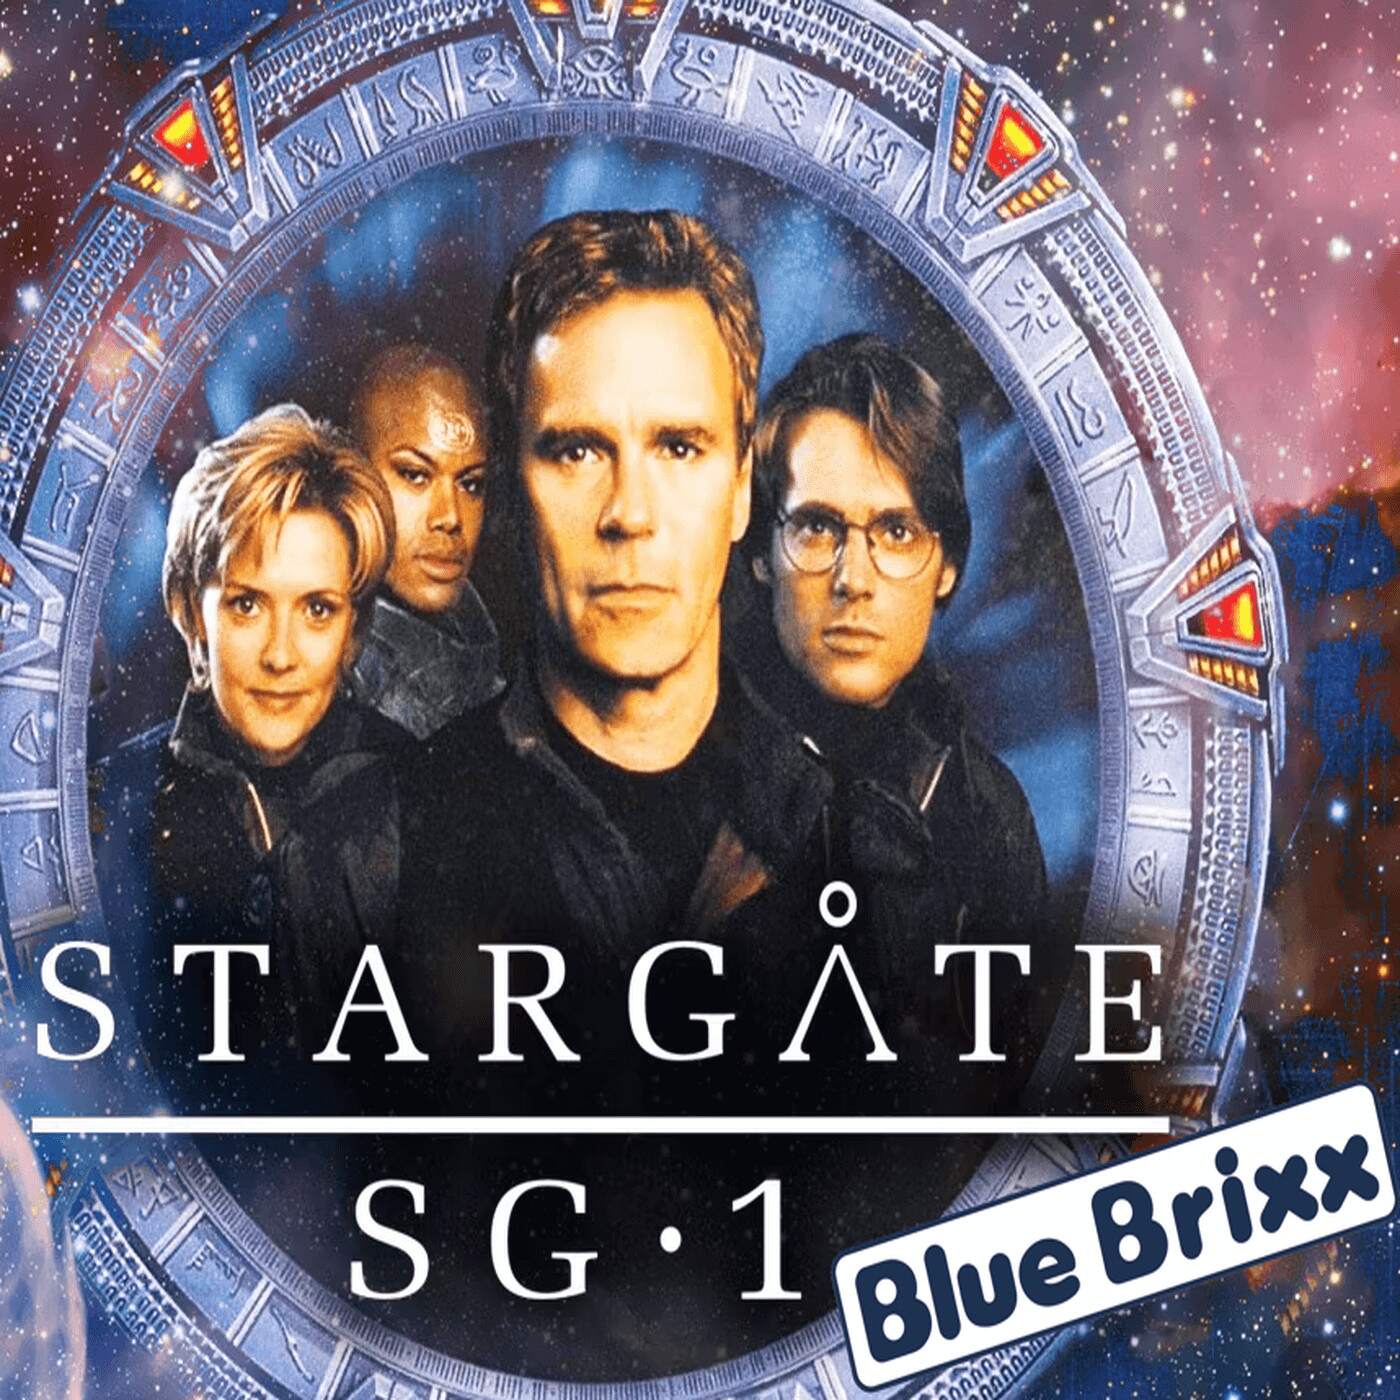 SONDERFOLGE #5: Blue Brixx erhält die Stargate-Lizenz